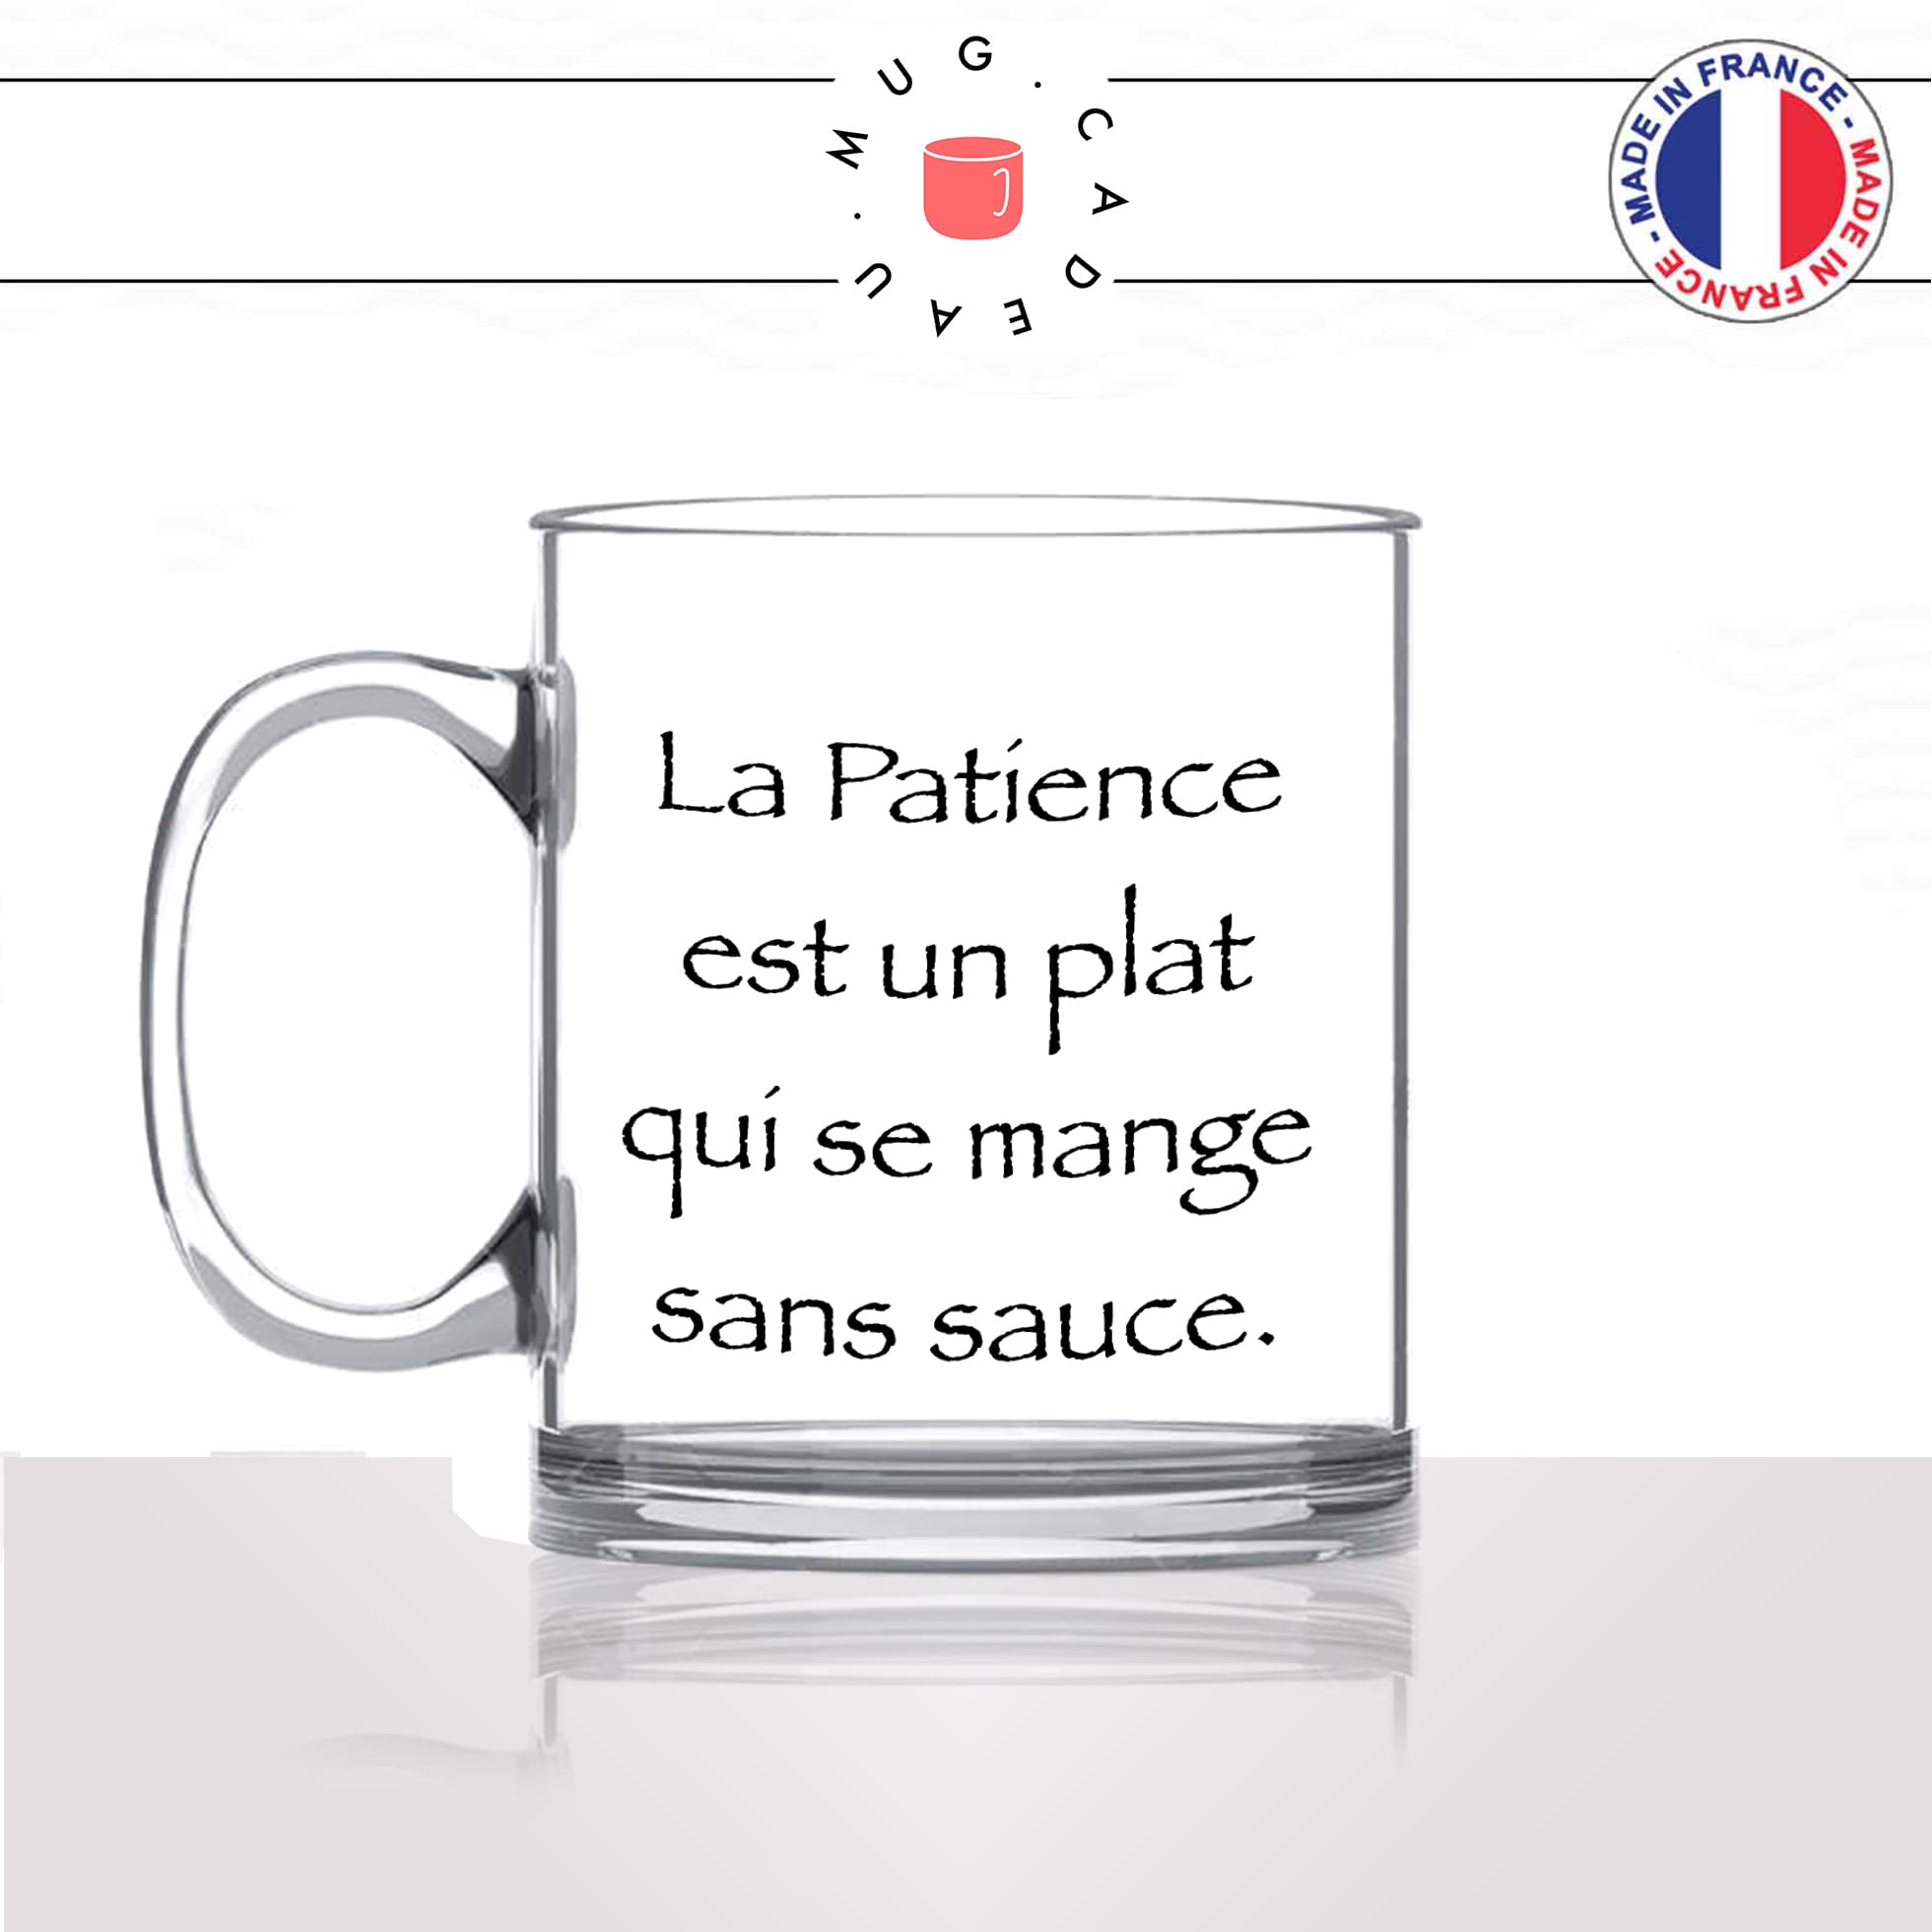 mug-tasse-en-verre-transparent-glass-série-francaise-culte-kaamelott-arthur-la-patience-perceval-humour-télé-idée-cadeau-fun-cool-café-thé